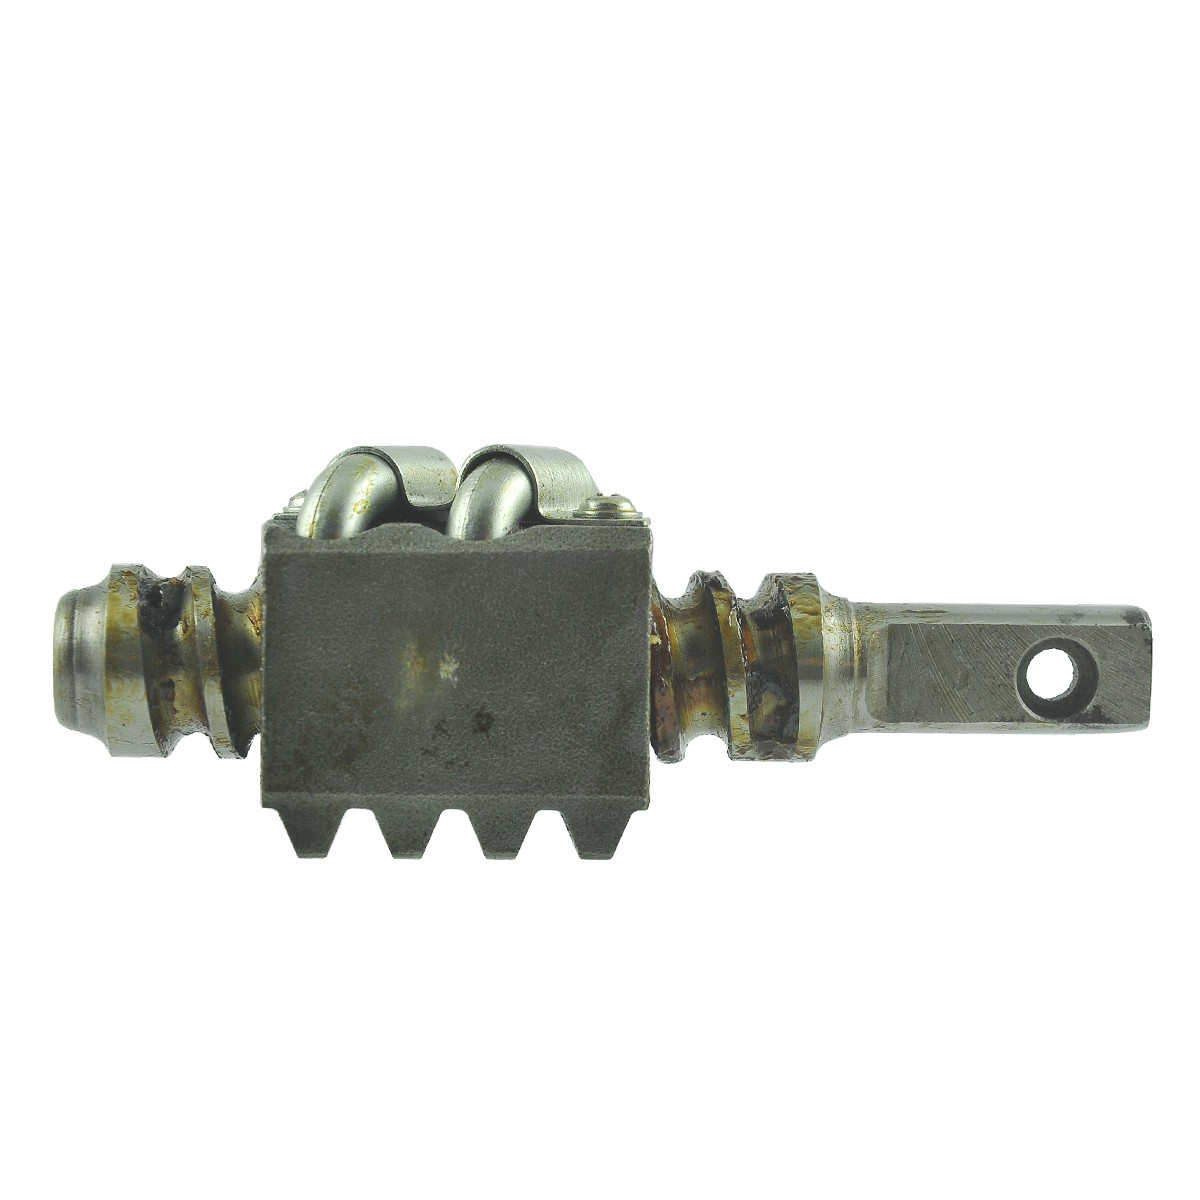 Steering column shaft 132 mm / Kubota L1802/L2002/L2202/L2402/L2602/L2802/L3202/L3602/L4202 / 38240-16200 / 38240-16500